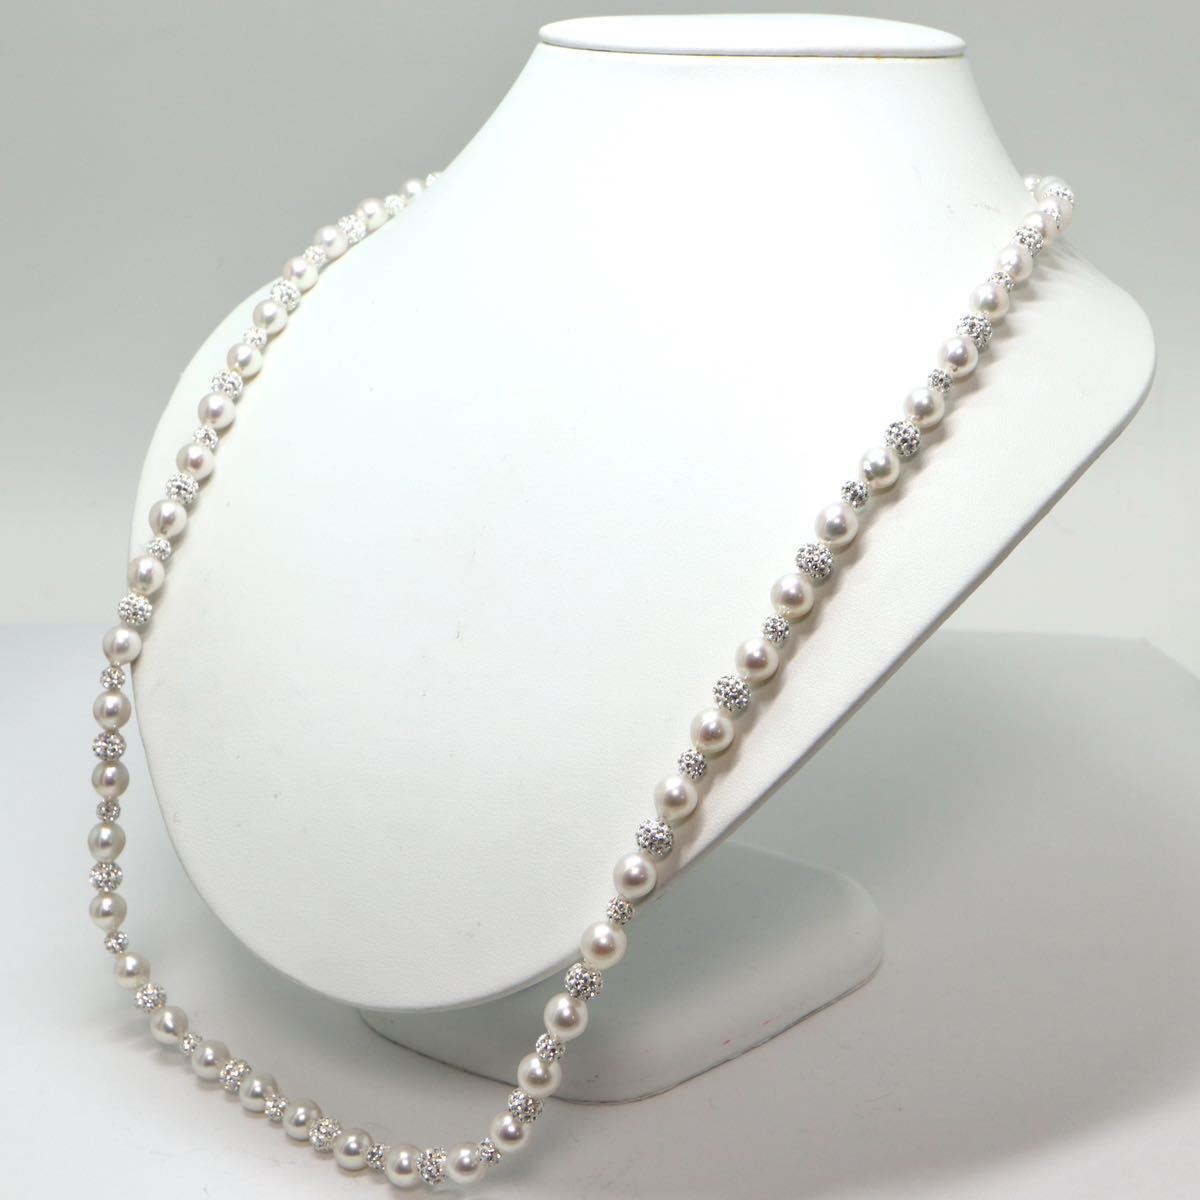 《アコヤ本真珠ロングネックレス》M 7.0-7.5mm珠 41.3g 約72cm pearl necklace ジュエリー jewelry ☆_画像3